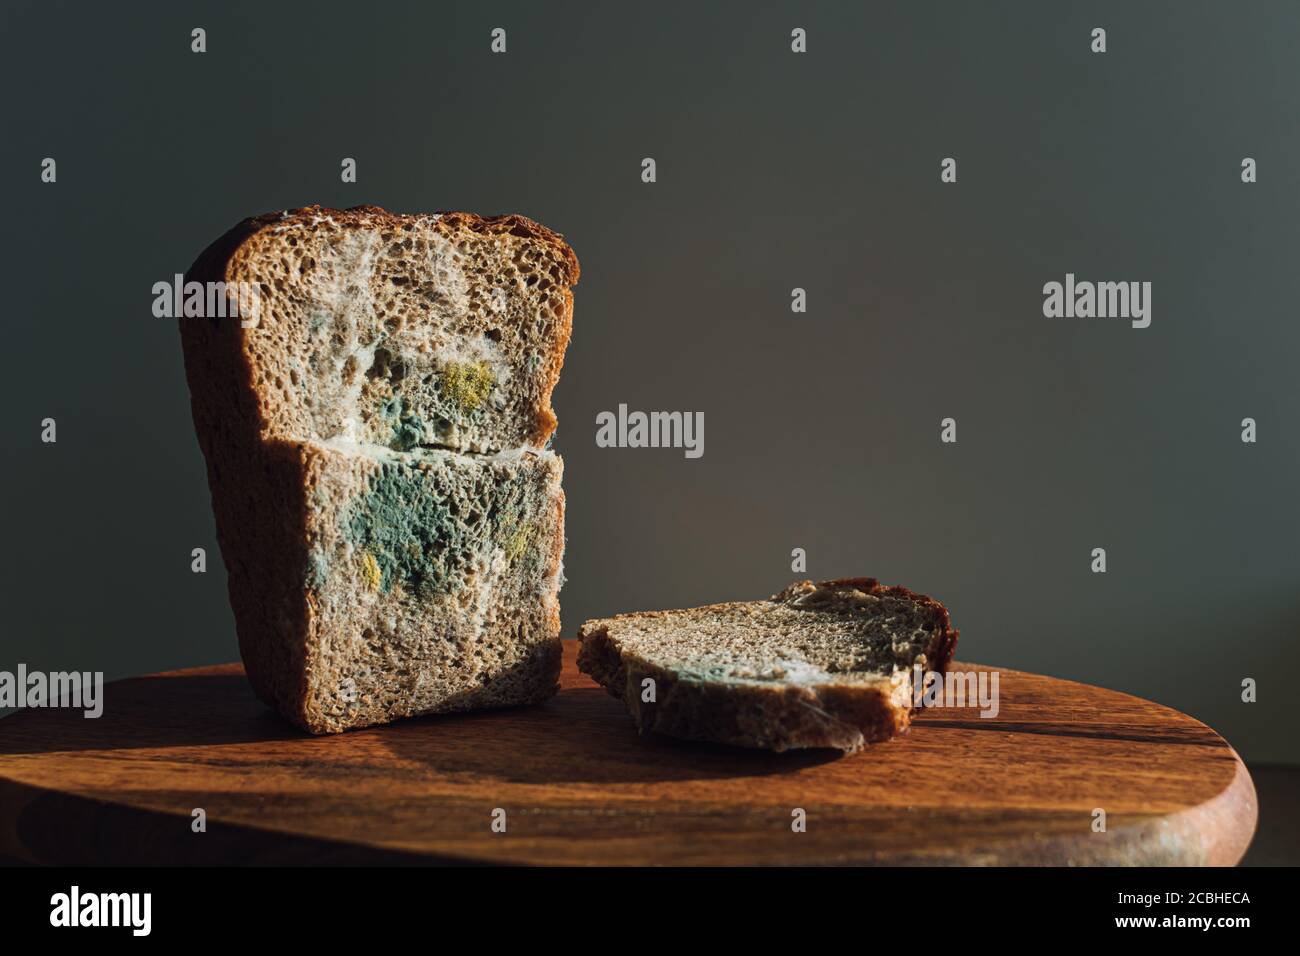 Molde sobre pan, un trozo de pan de centeno con molde blanco y verde. Mejor antes de la fecha ha expirado hace mucho tiempo con este alimento mohoso. Foto de stock